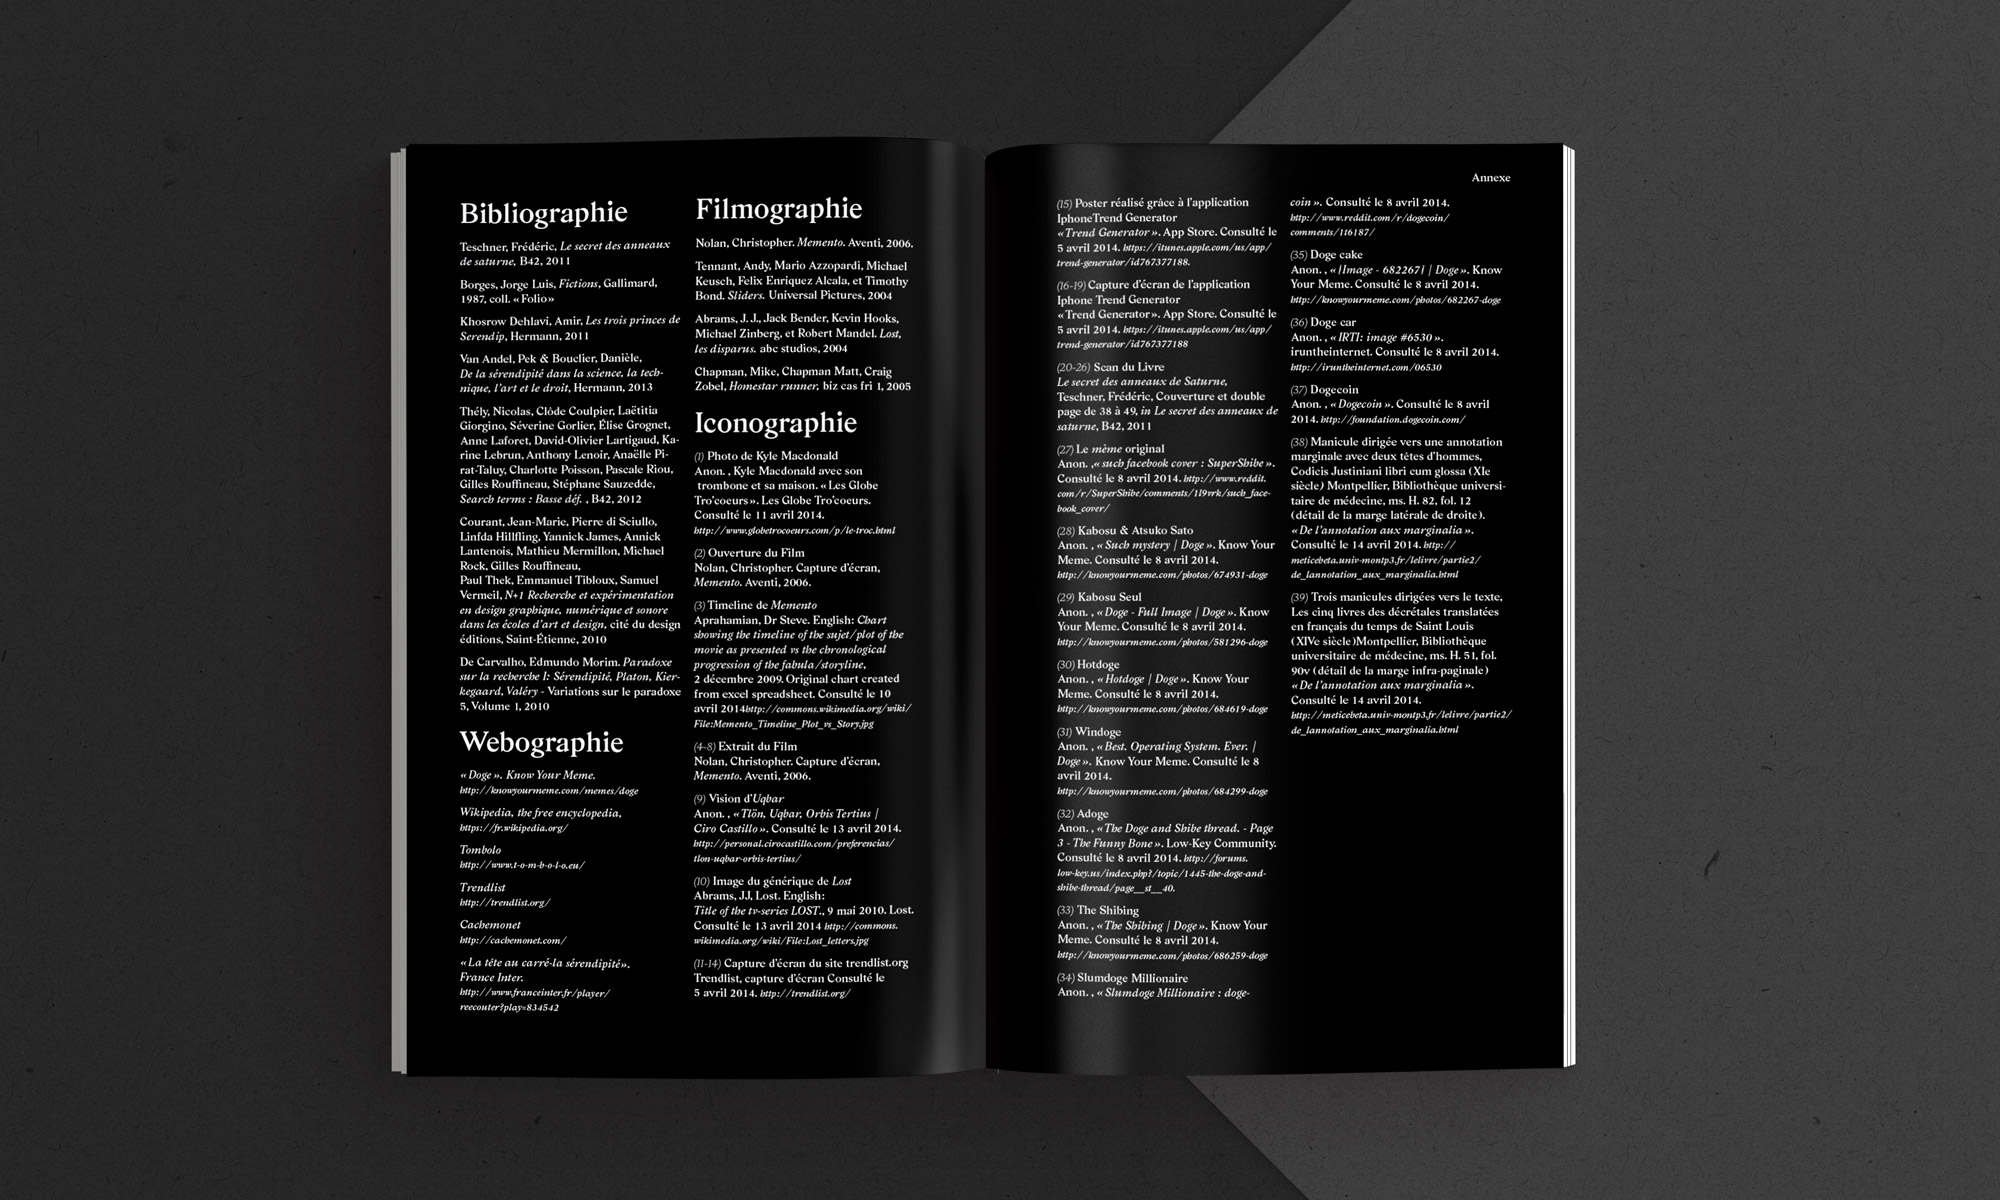 Interieur et mise en page livre Constellations.
Réalisé par Au-delà studio.
Aloïs Ancenay 